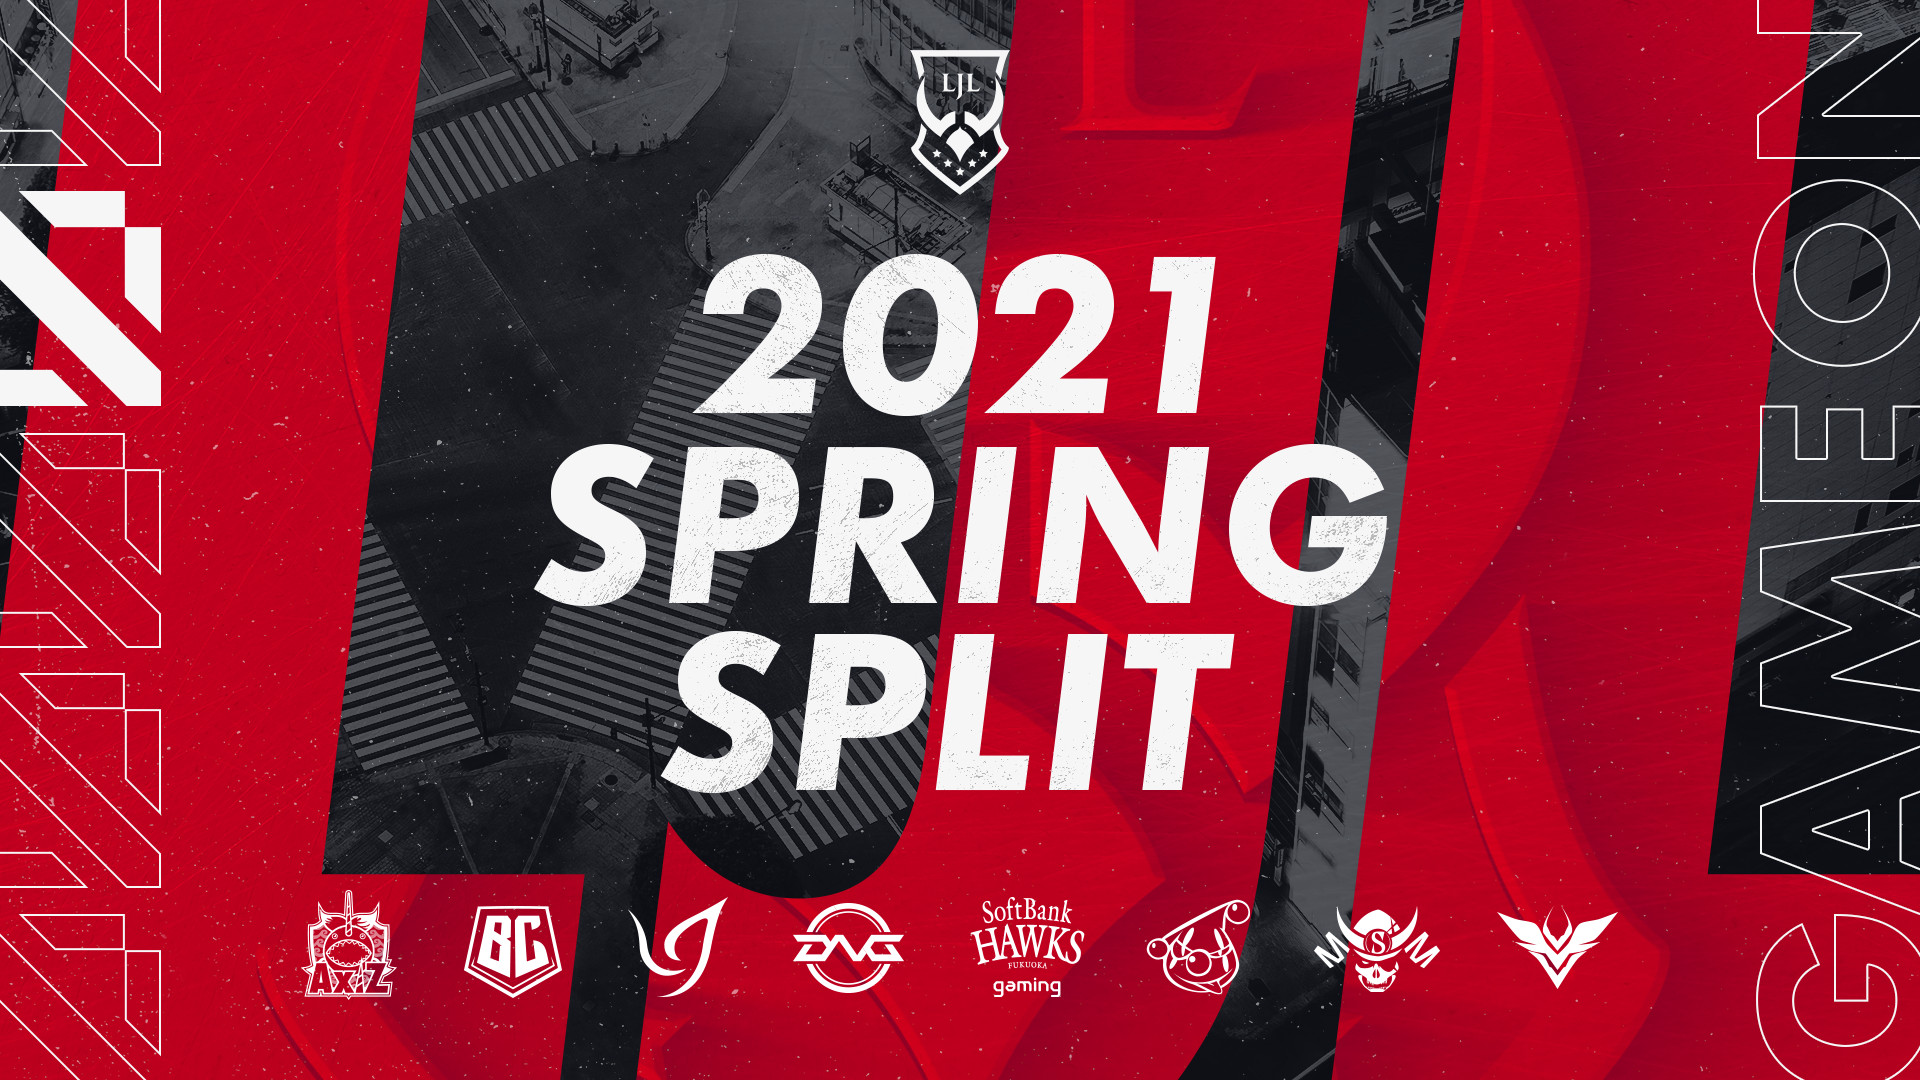 【大会情報】LJL 2021 Spring Split PLAYOFFS ROUND 2 MATCH 2